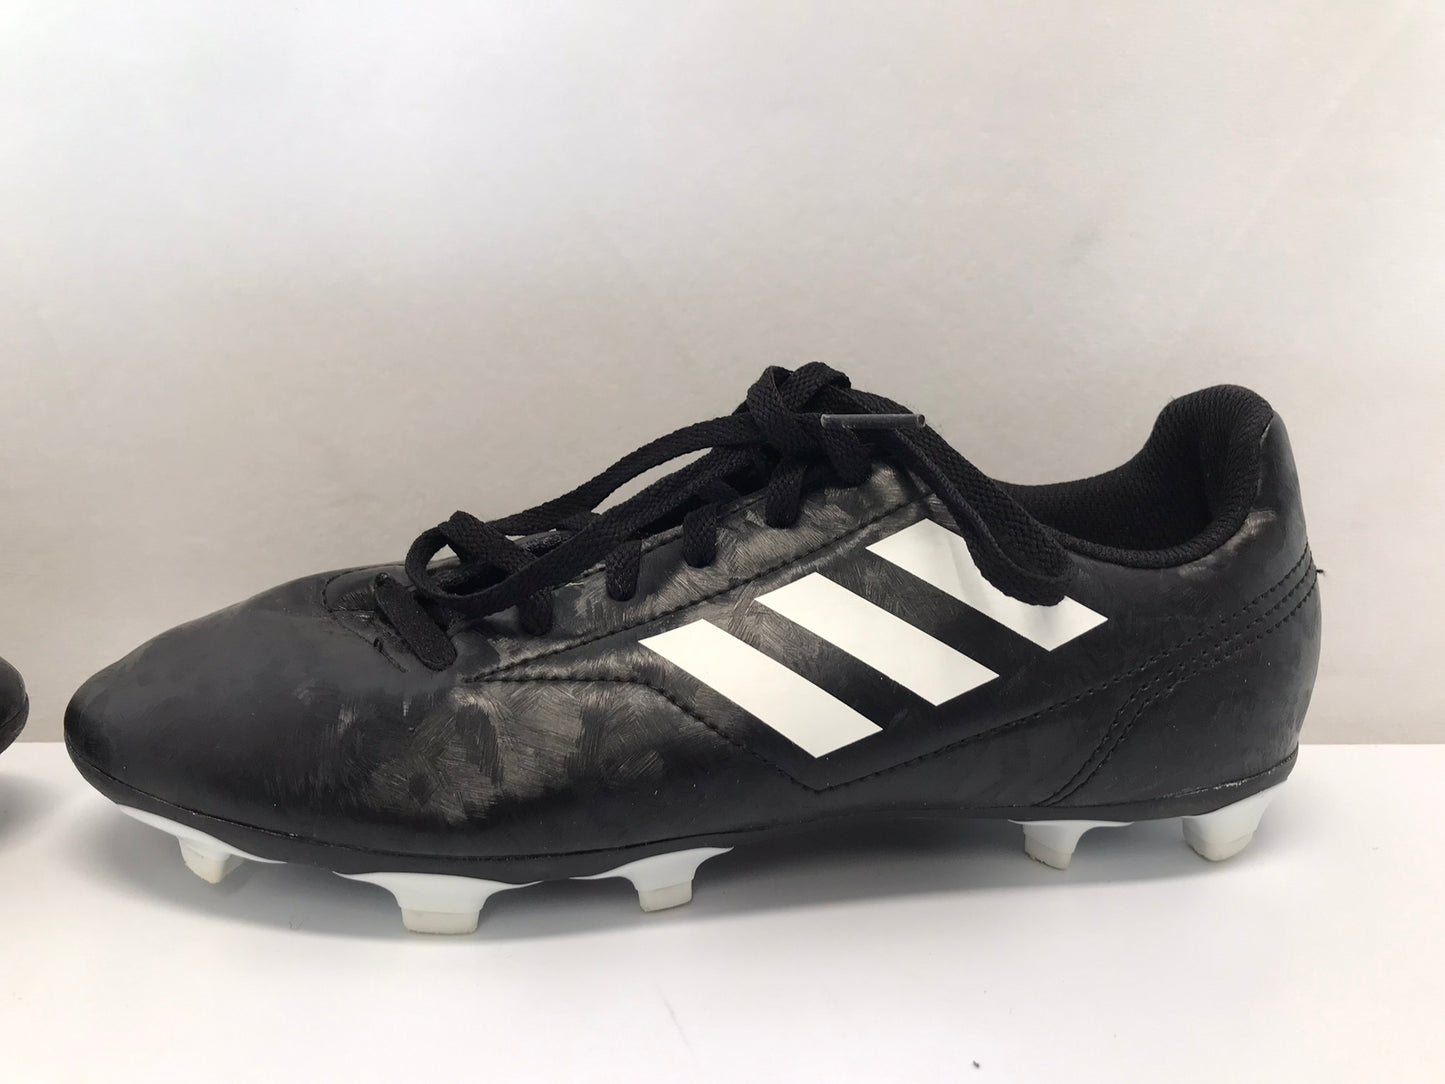 Soccer Shoes Cleats Men's Size 6 Adidas Black White Excellent